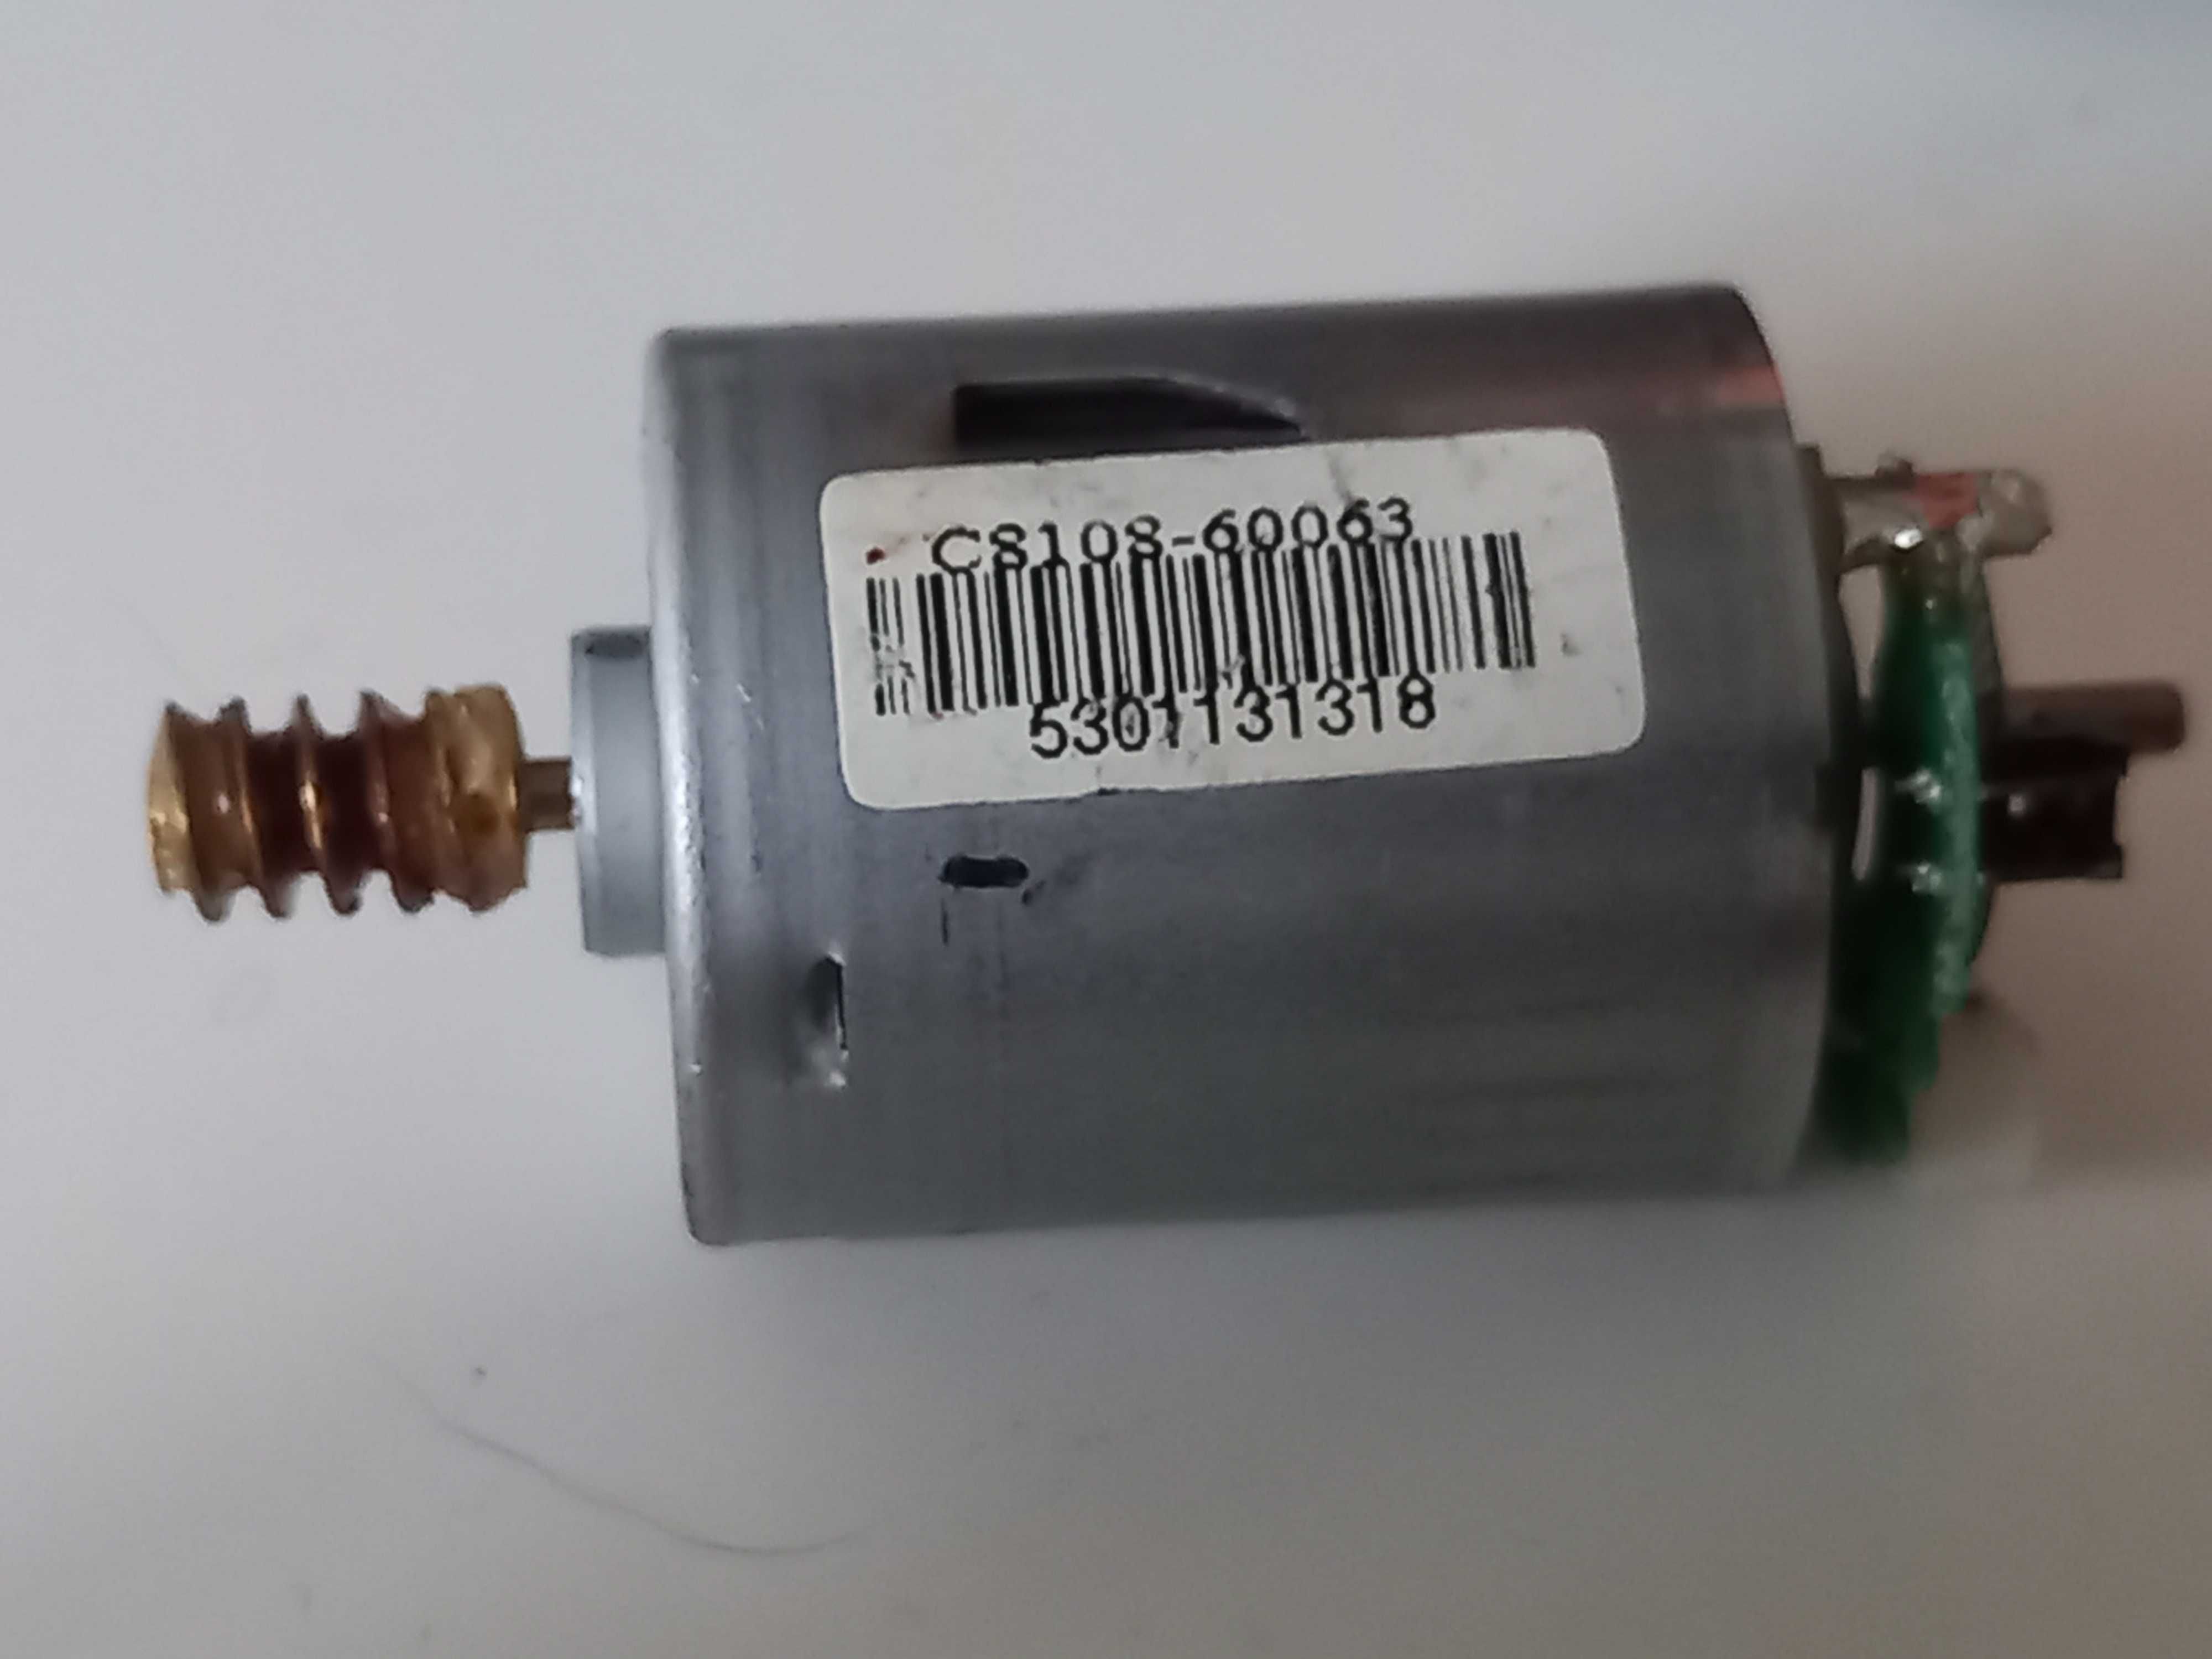 Silniki DC z enkoderem (enkoder optyczny), sprawne C8108 - 60063